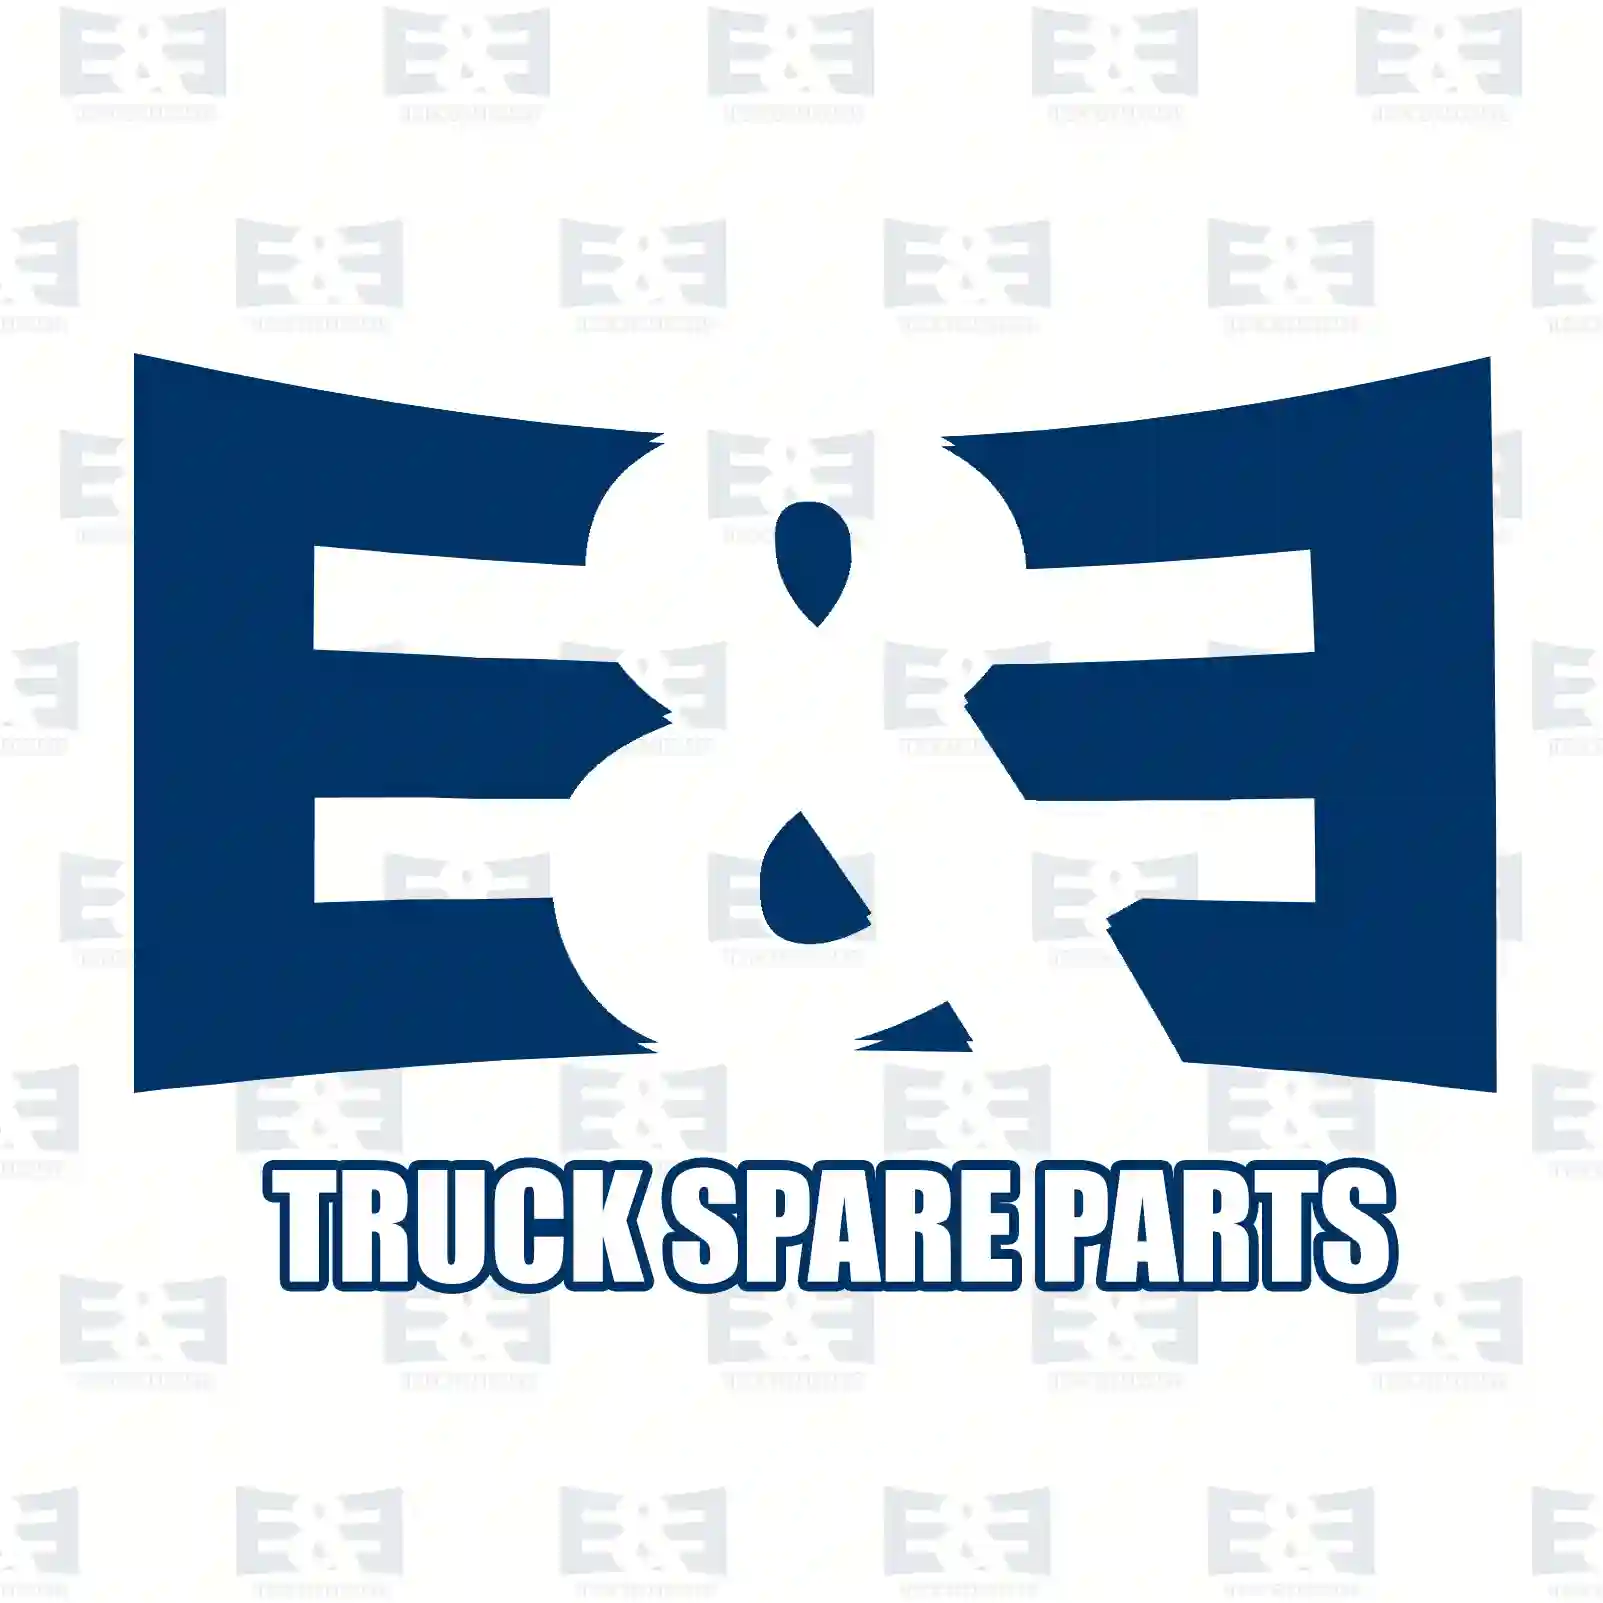  Belt tensioner, new version || E&E Truck Spare Parts | Truck Spare Parts, Auotomotive Spare Parts